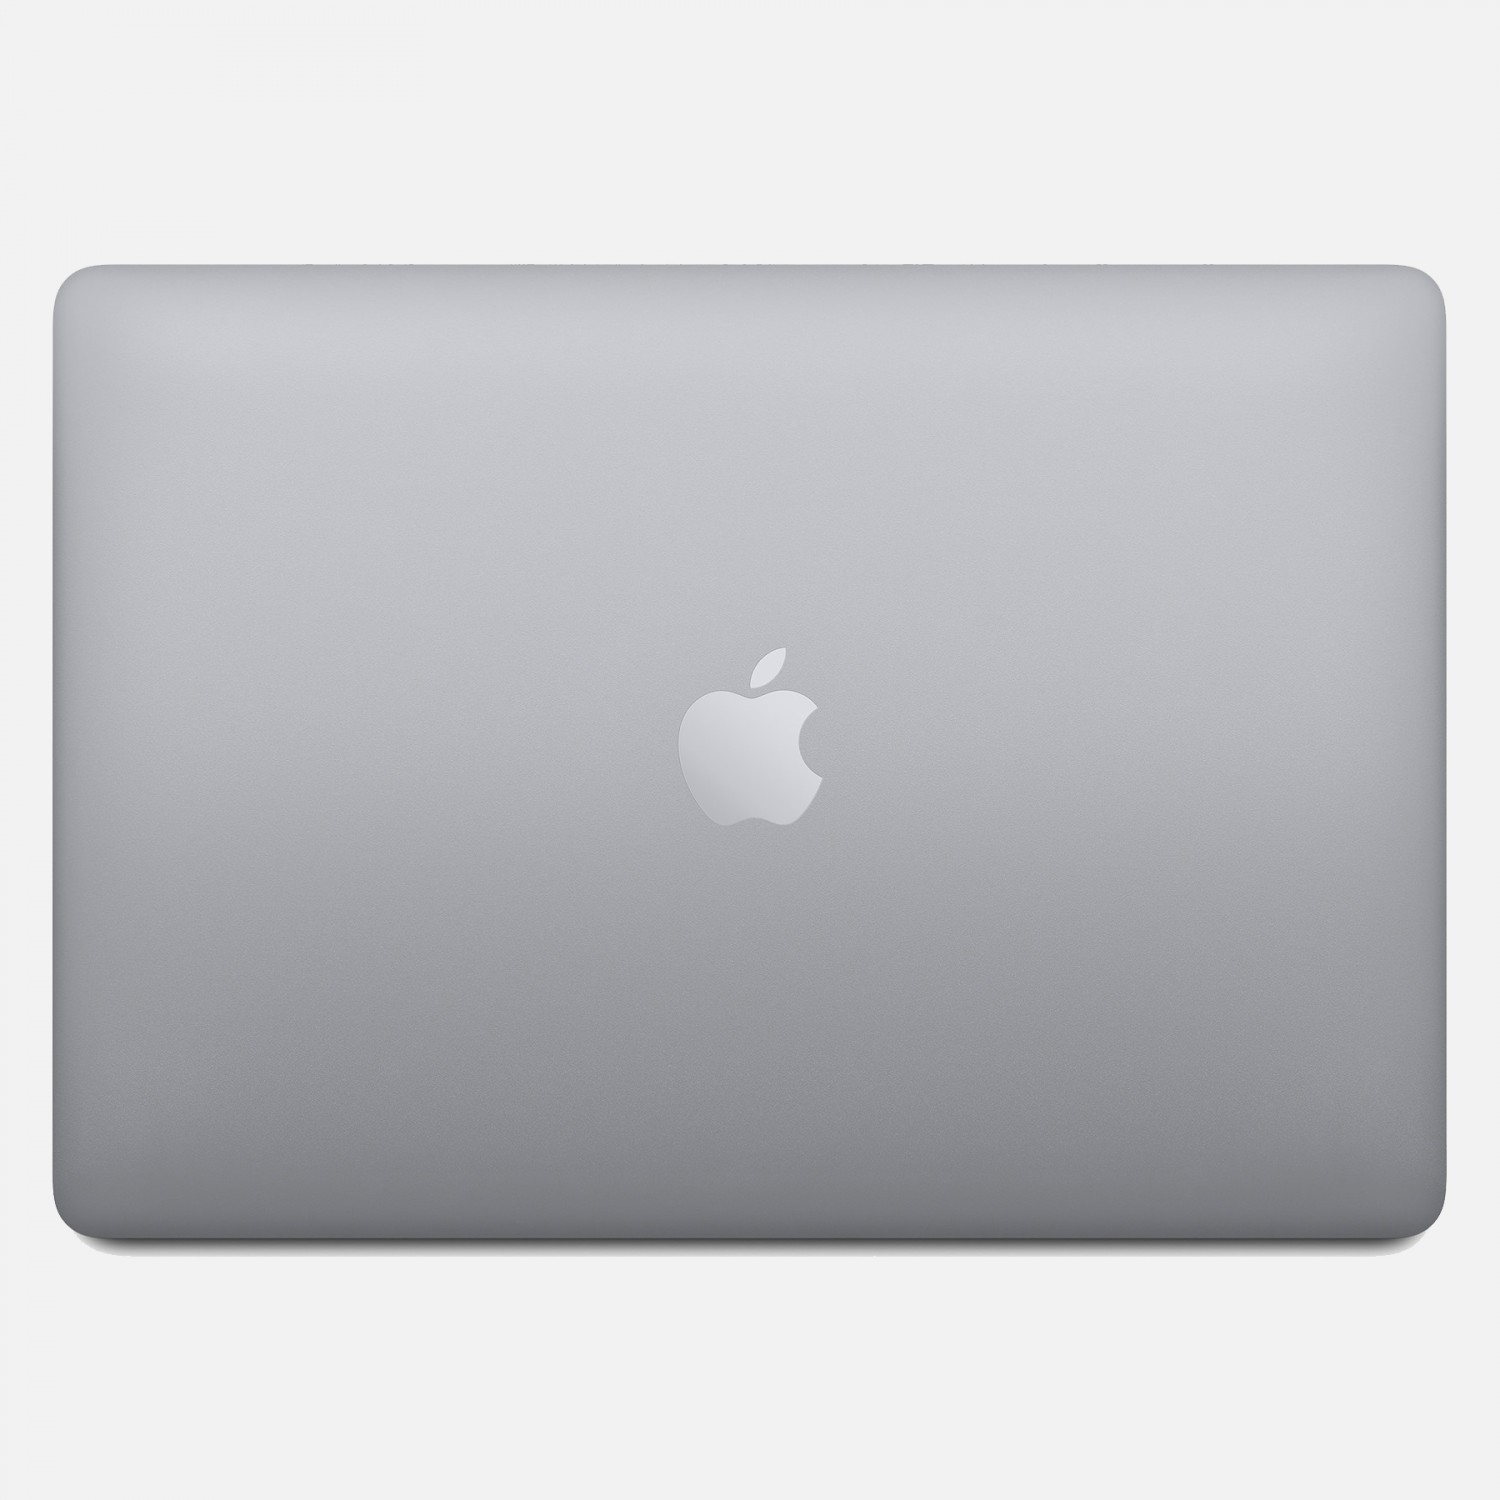 لپ تاپ Apple MacBook Pro 13 2020 CTO - Space Grey - B-5